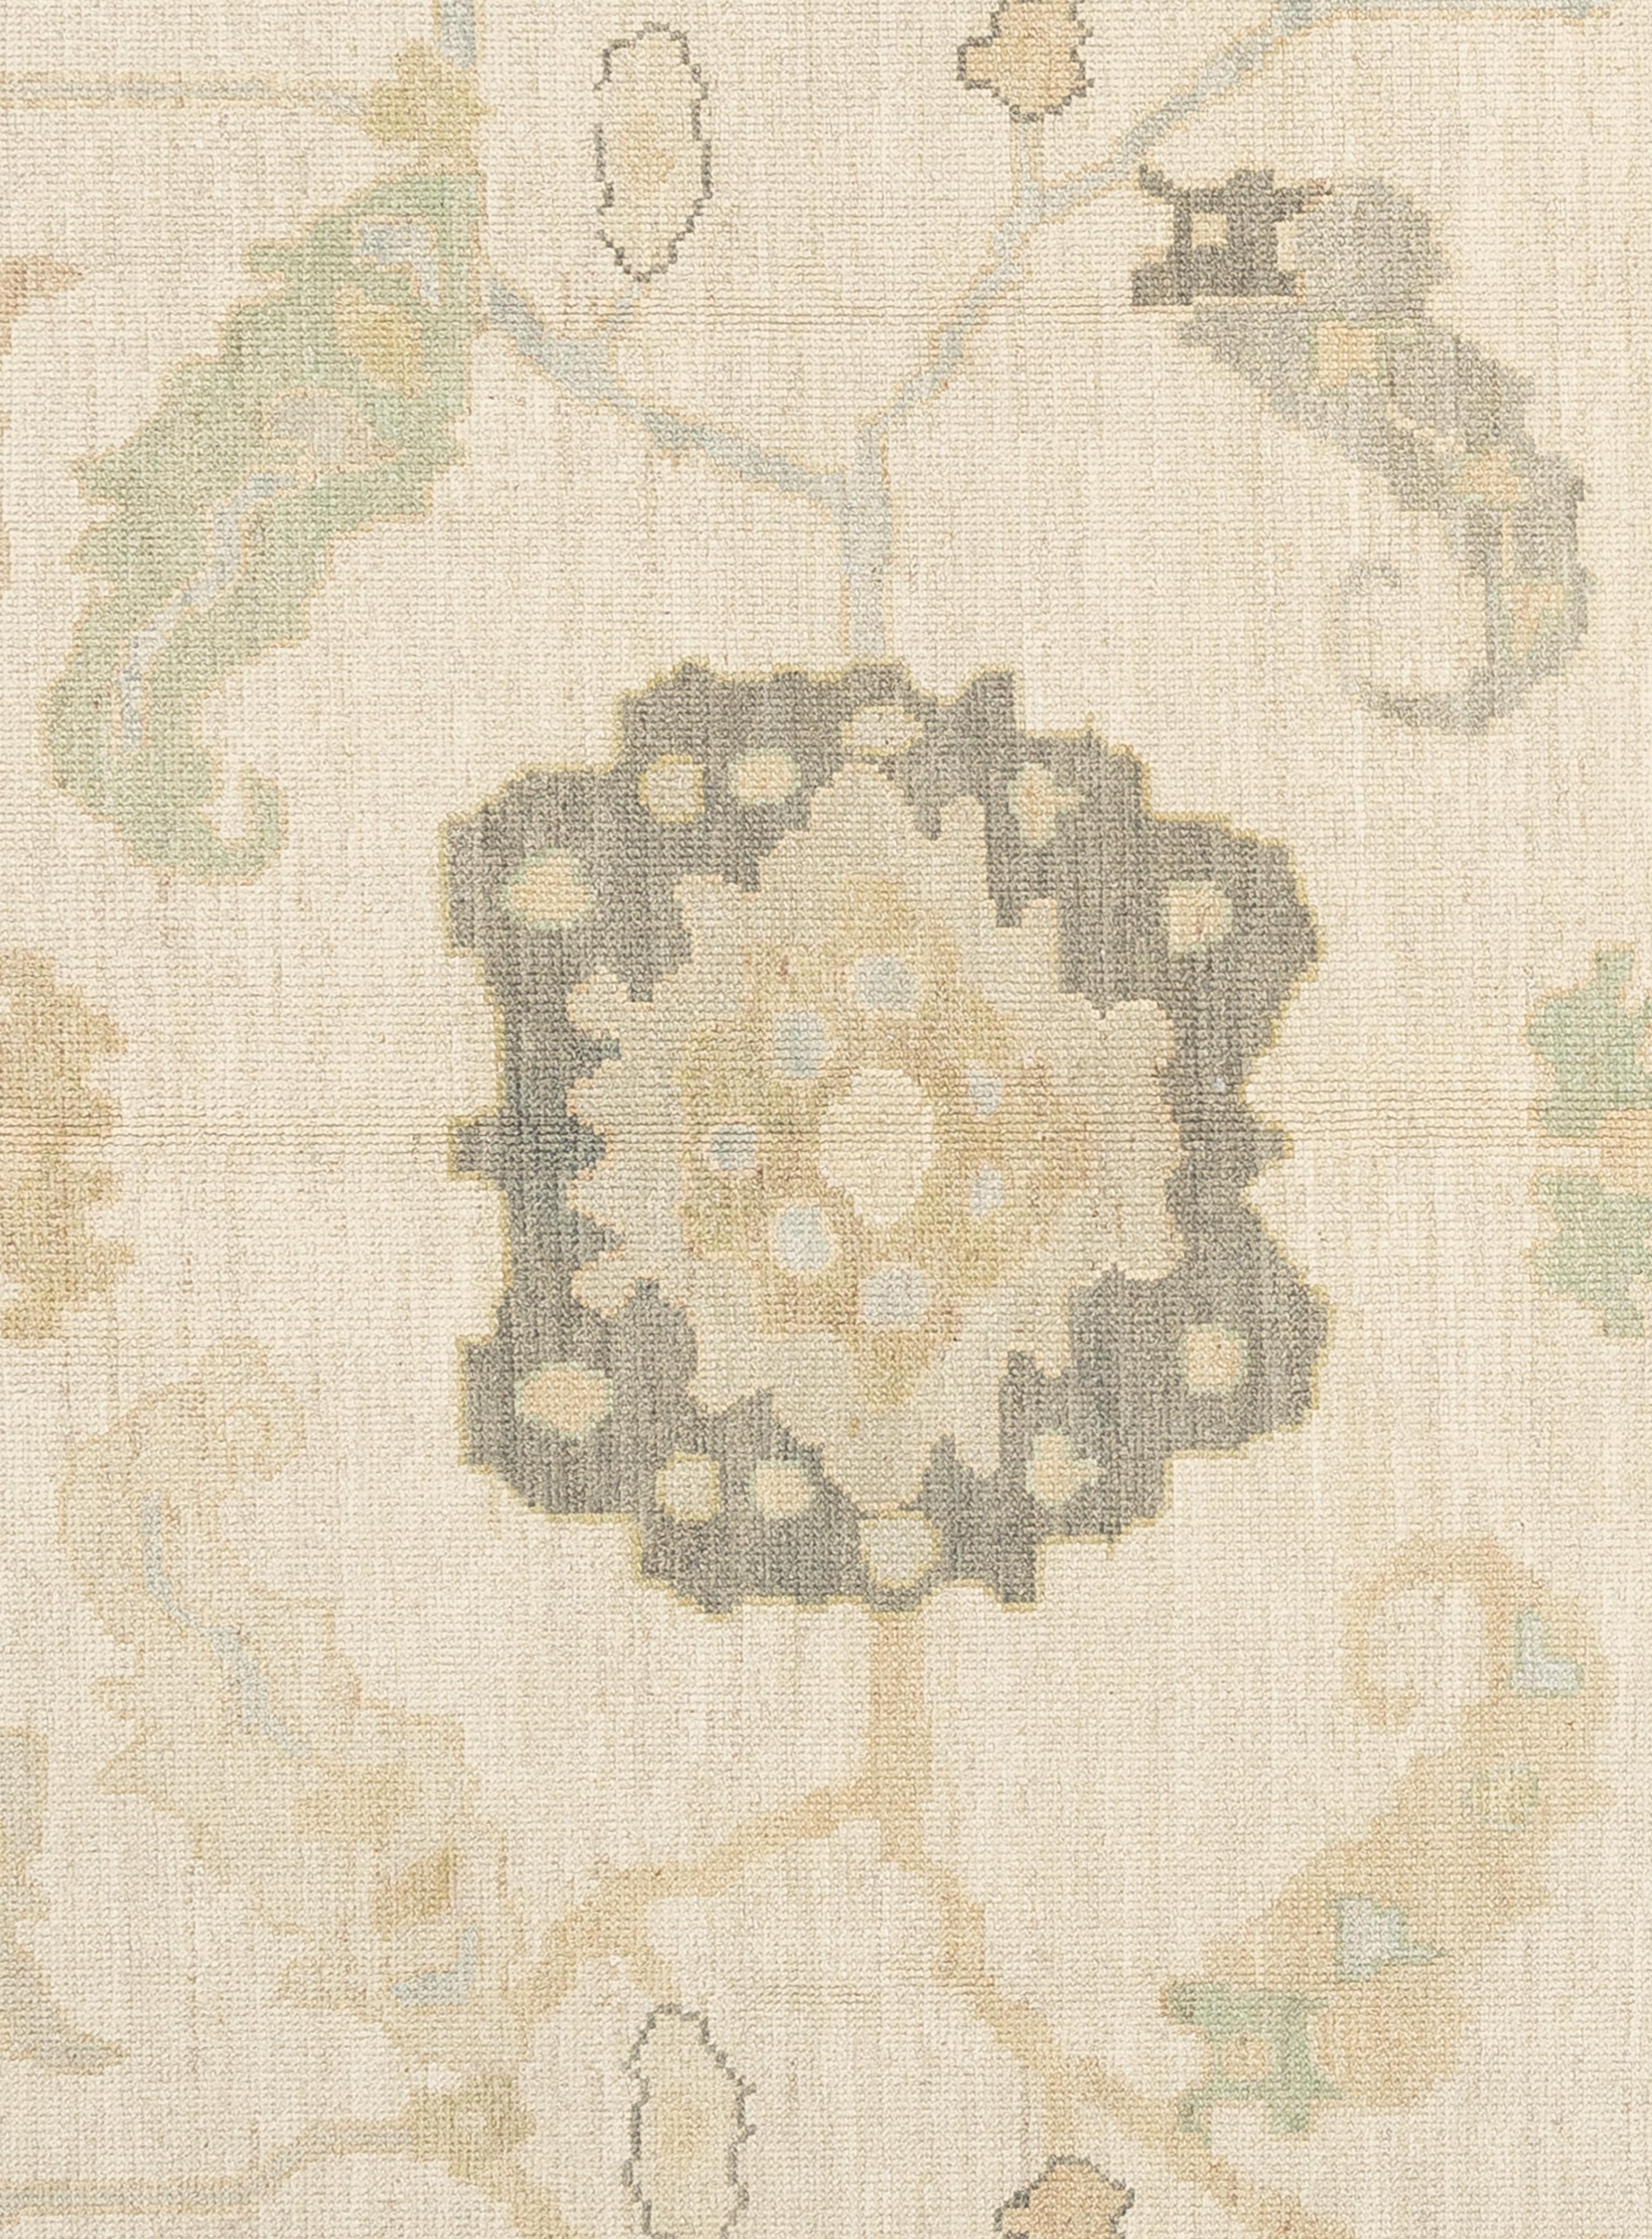 Cet exquis tapis turc Oushak est une véritable œuvre d'art, habilement tissée à la main par des artisans expérimentés selon des méthodes traditionnelles. Orné de motifs complexes et d'une palette de couleurs douces obtenues à partir de teintures